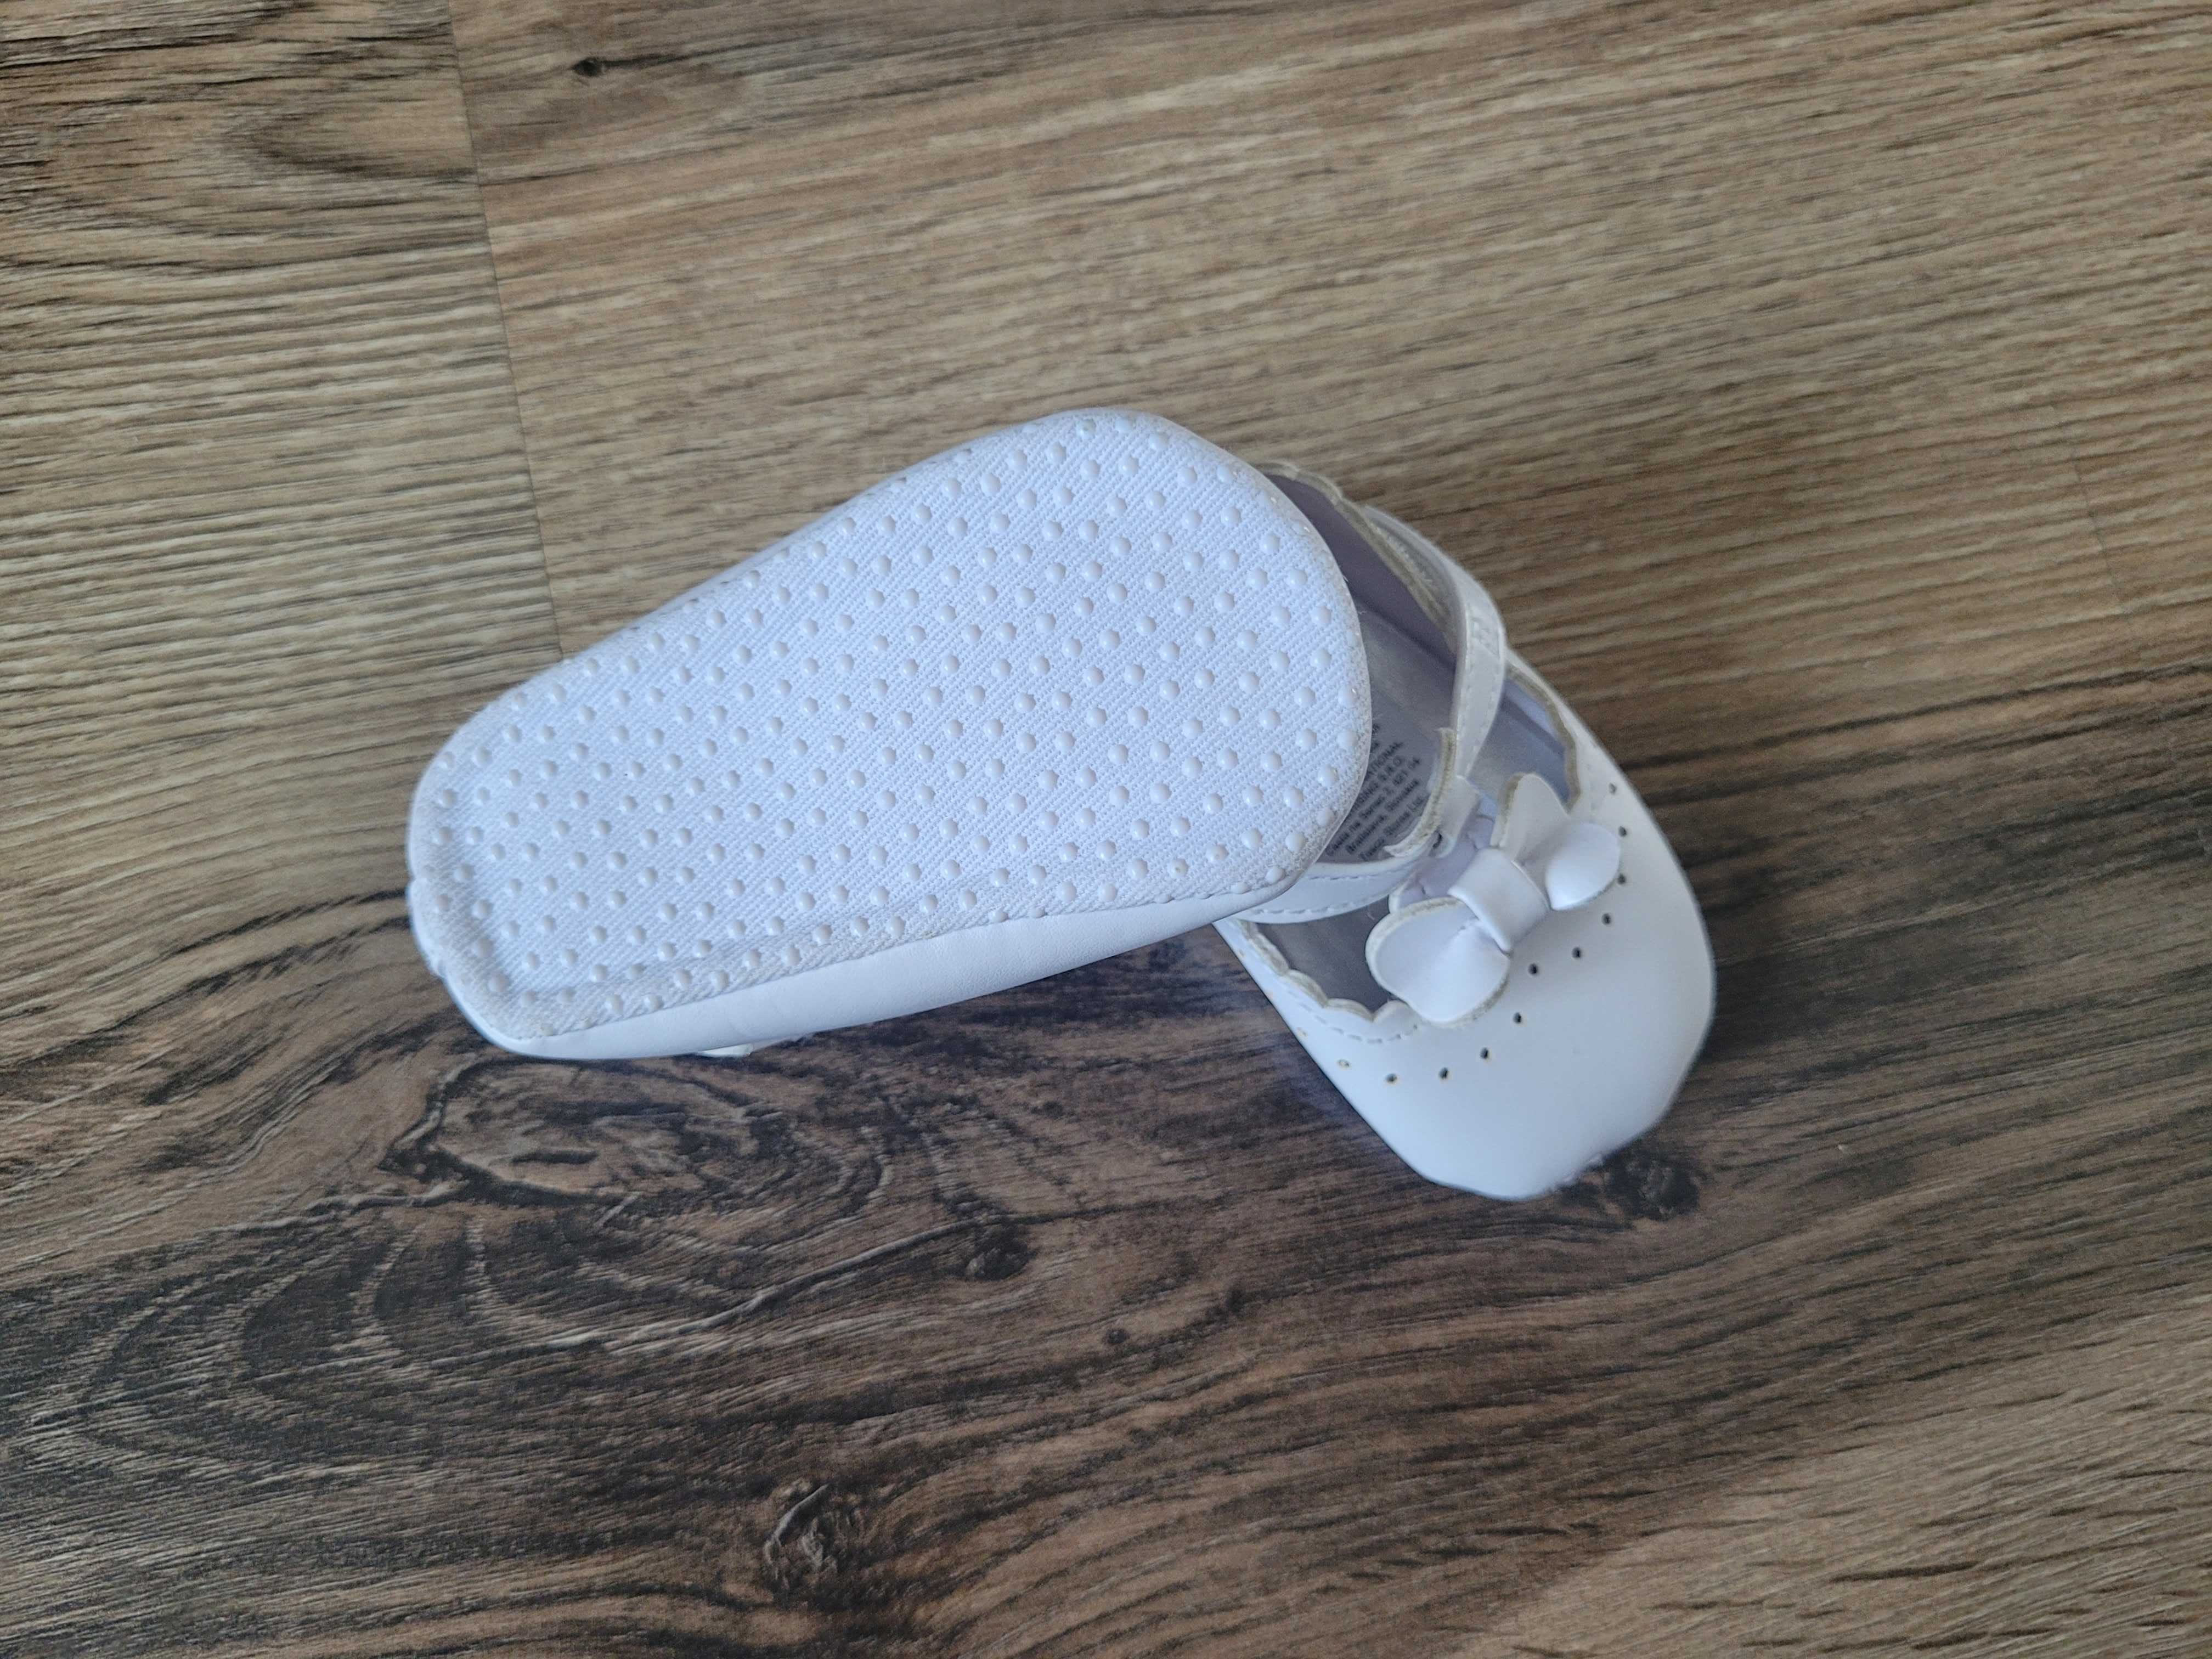 Nowe białe buciki niemowlęce, chrzest długość około 10,5 cm